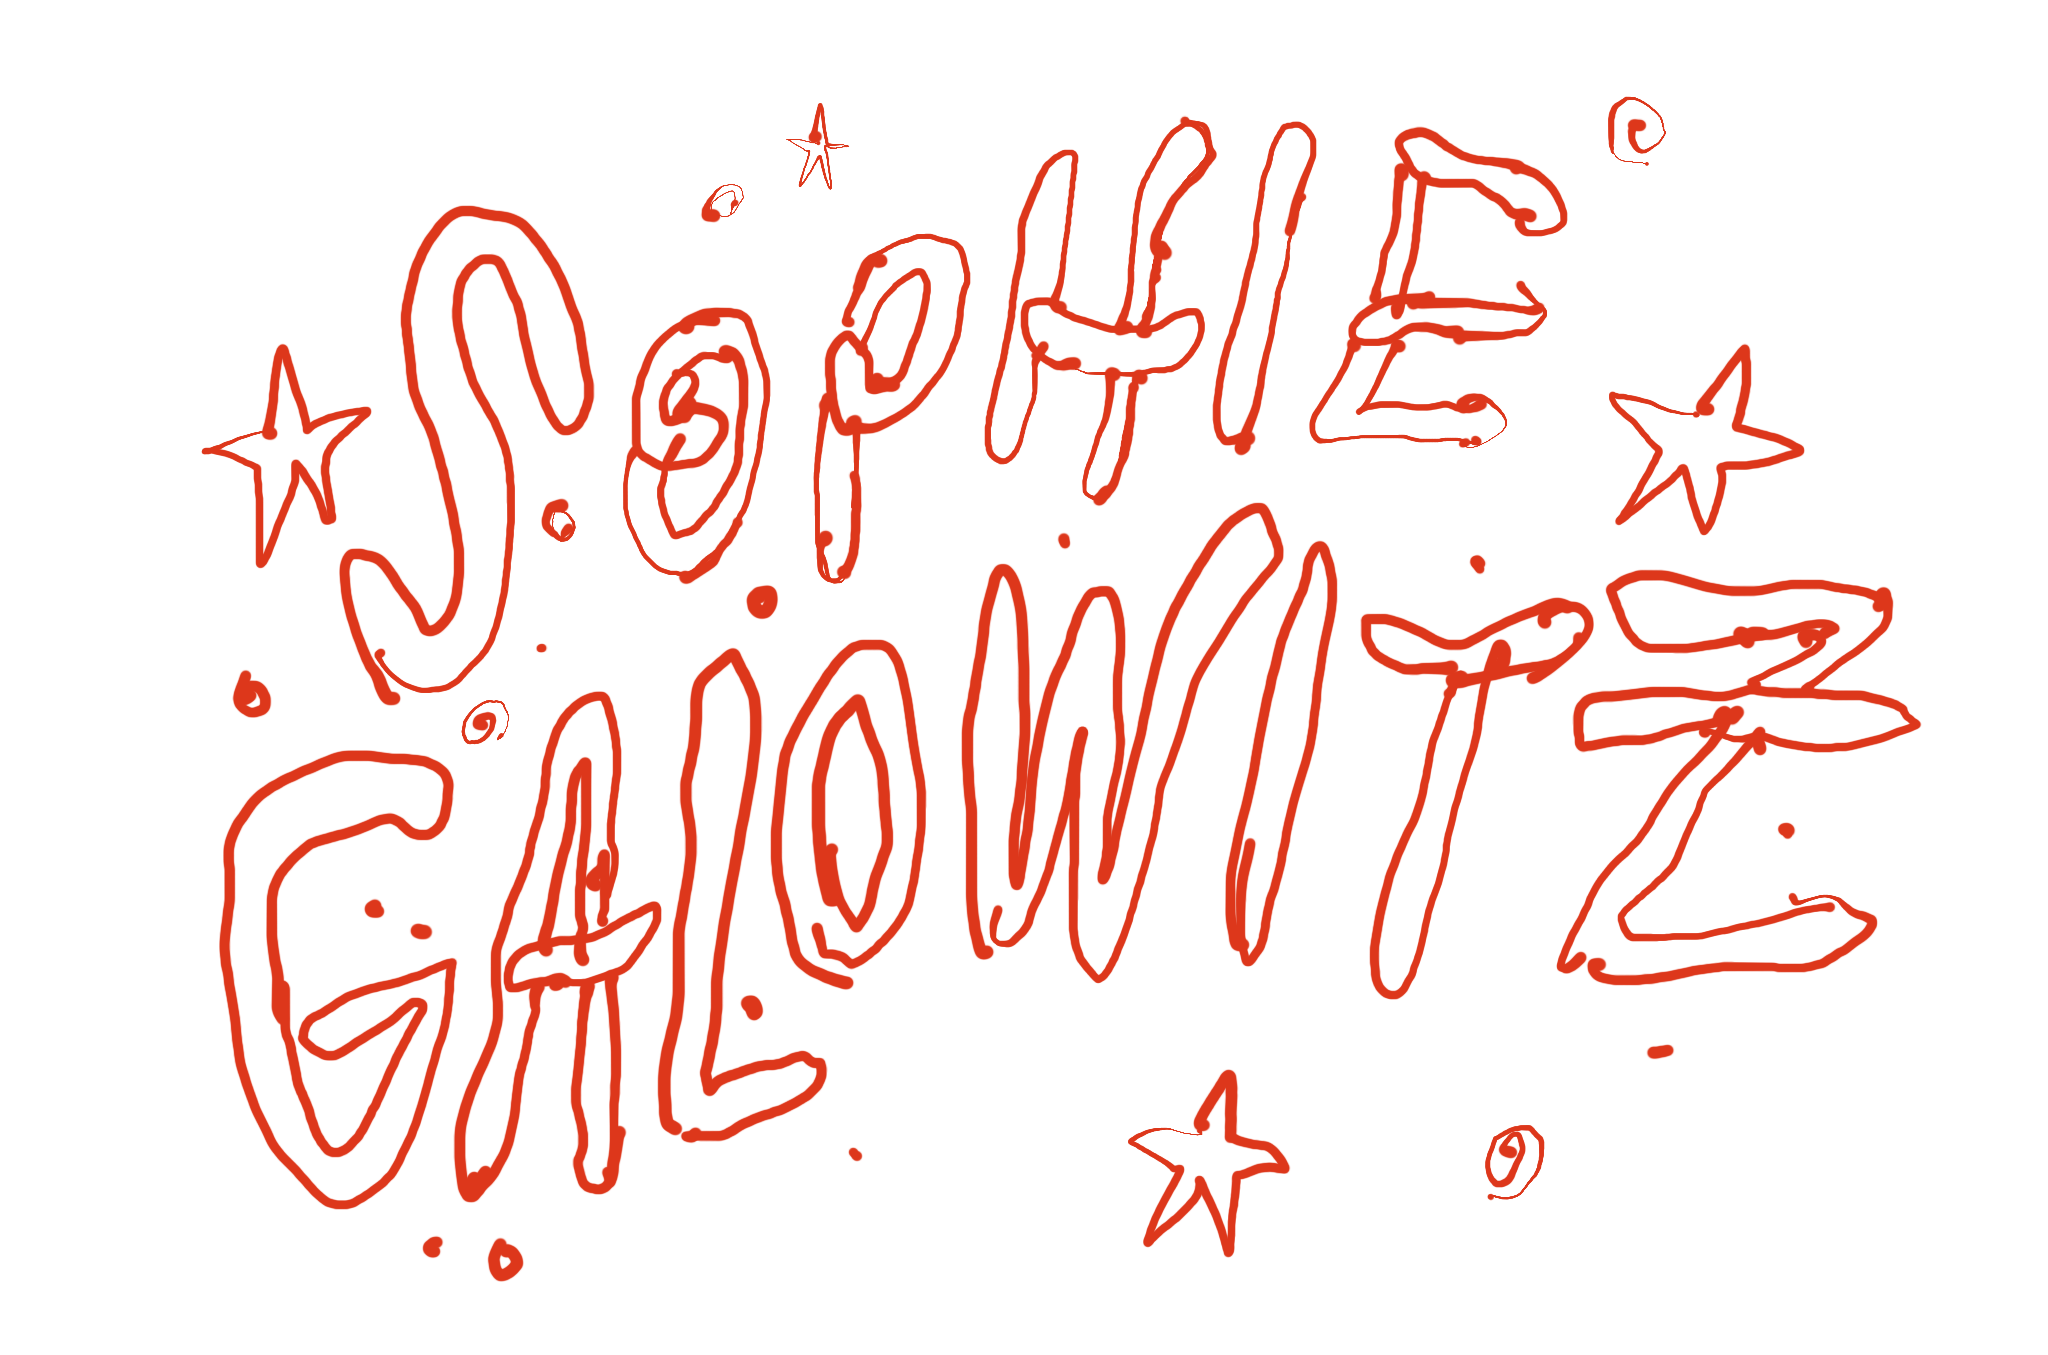 Sophie Galowitz